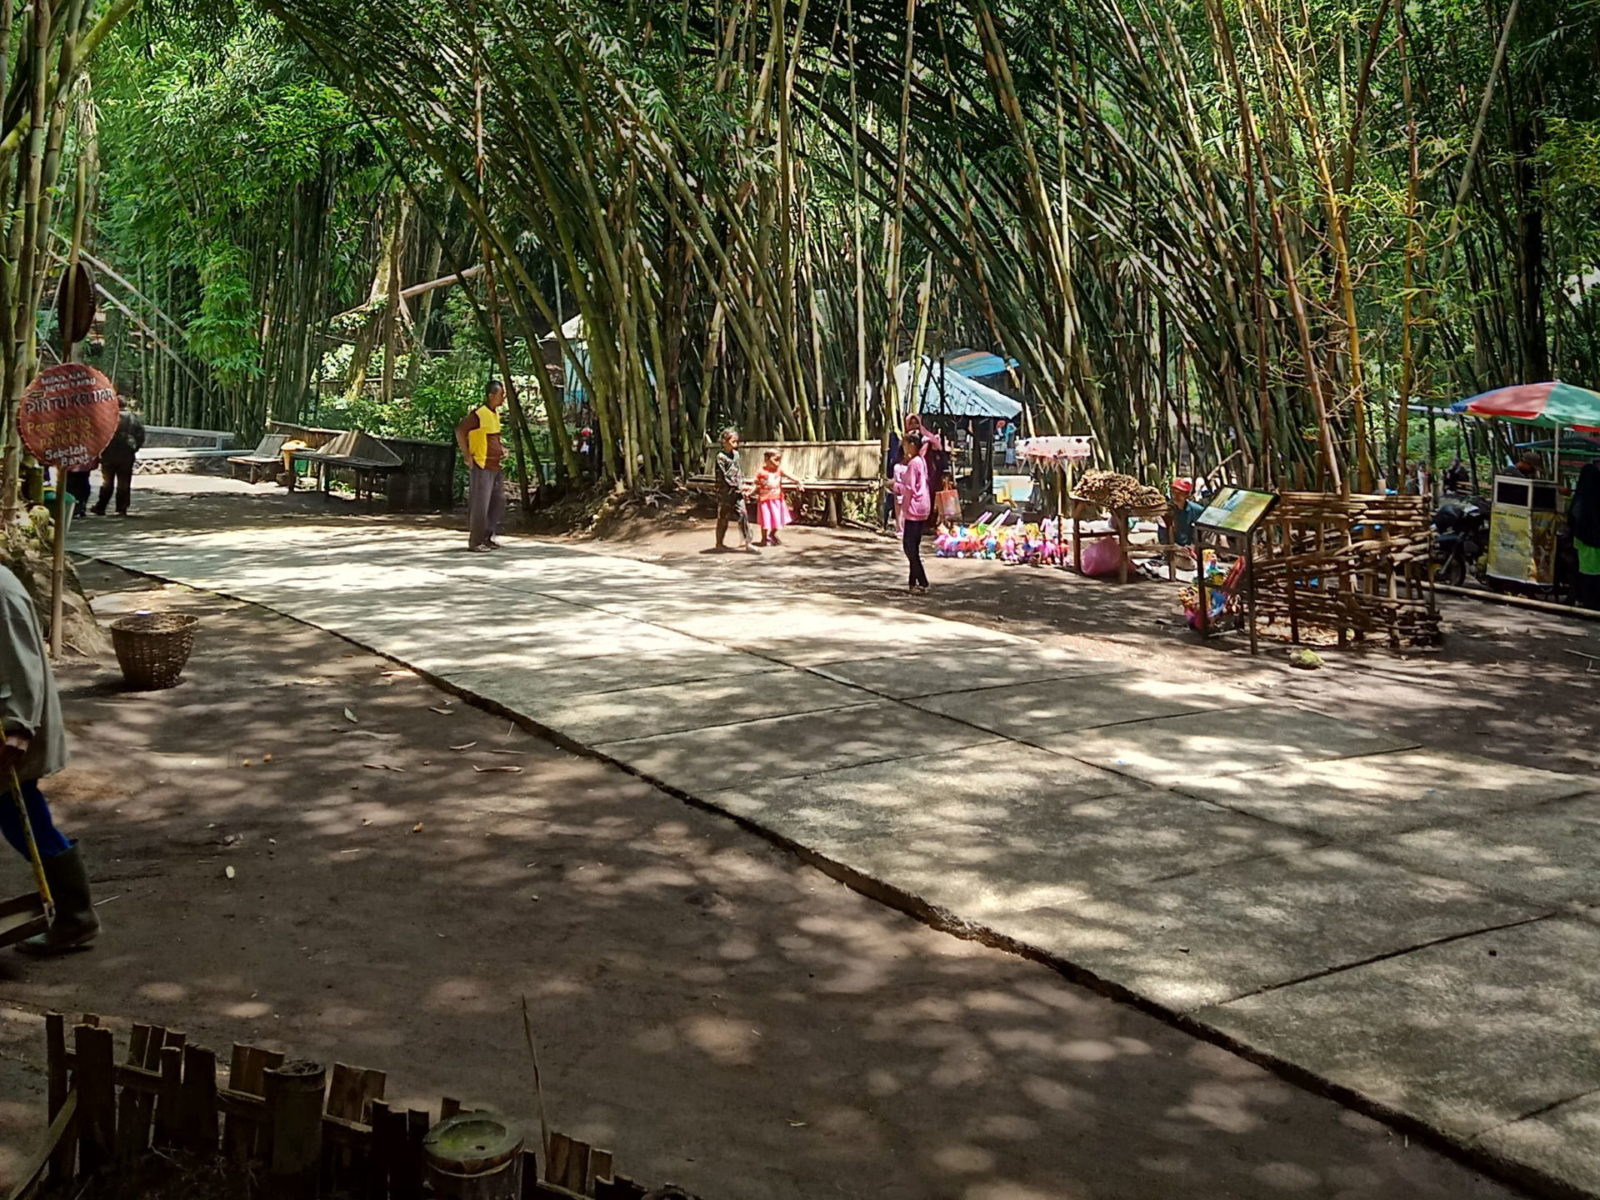 Pohon bambu yang rimbun di area hutan bambu lumajang